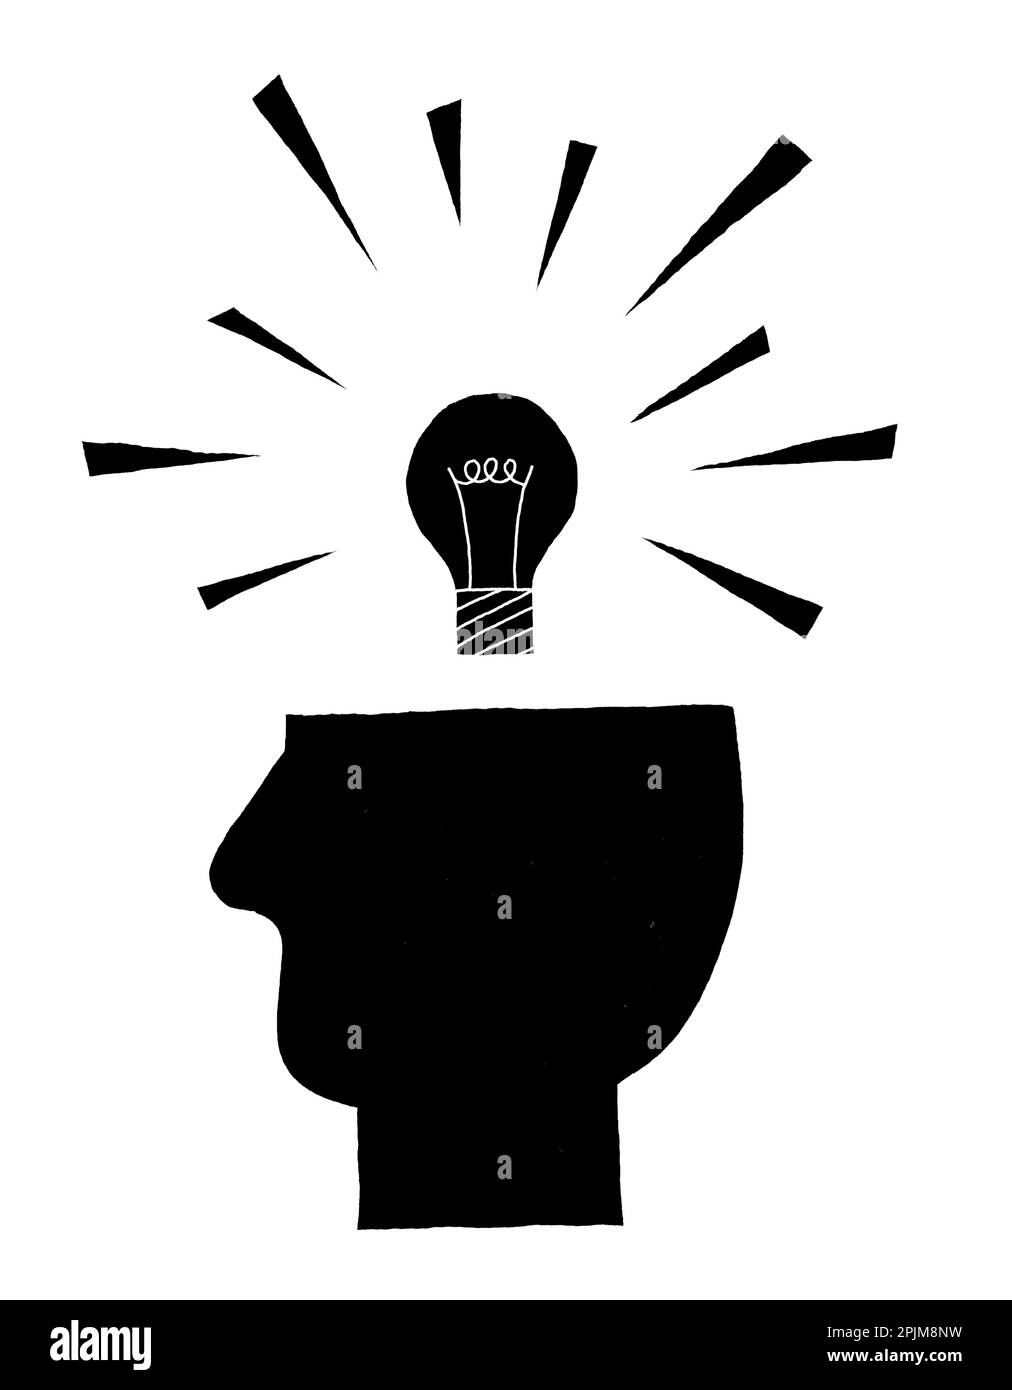 Illustration noire et blanche d'une ampoule au-dessus de la tête d'une personne, illustrant la théorie des mémoires d'ampoules de Roger Brown Banque D'Images